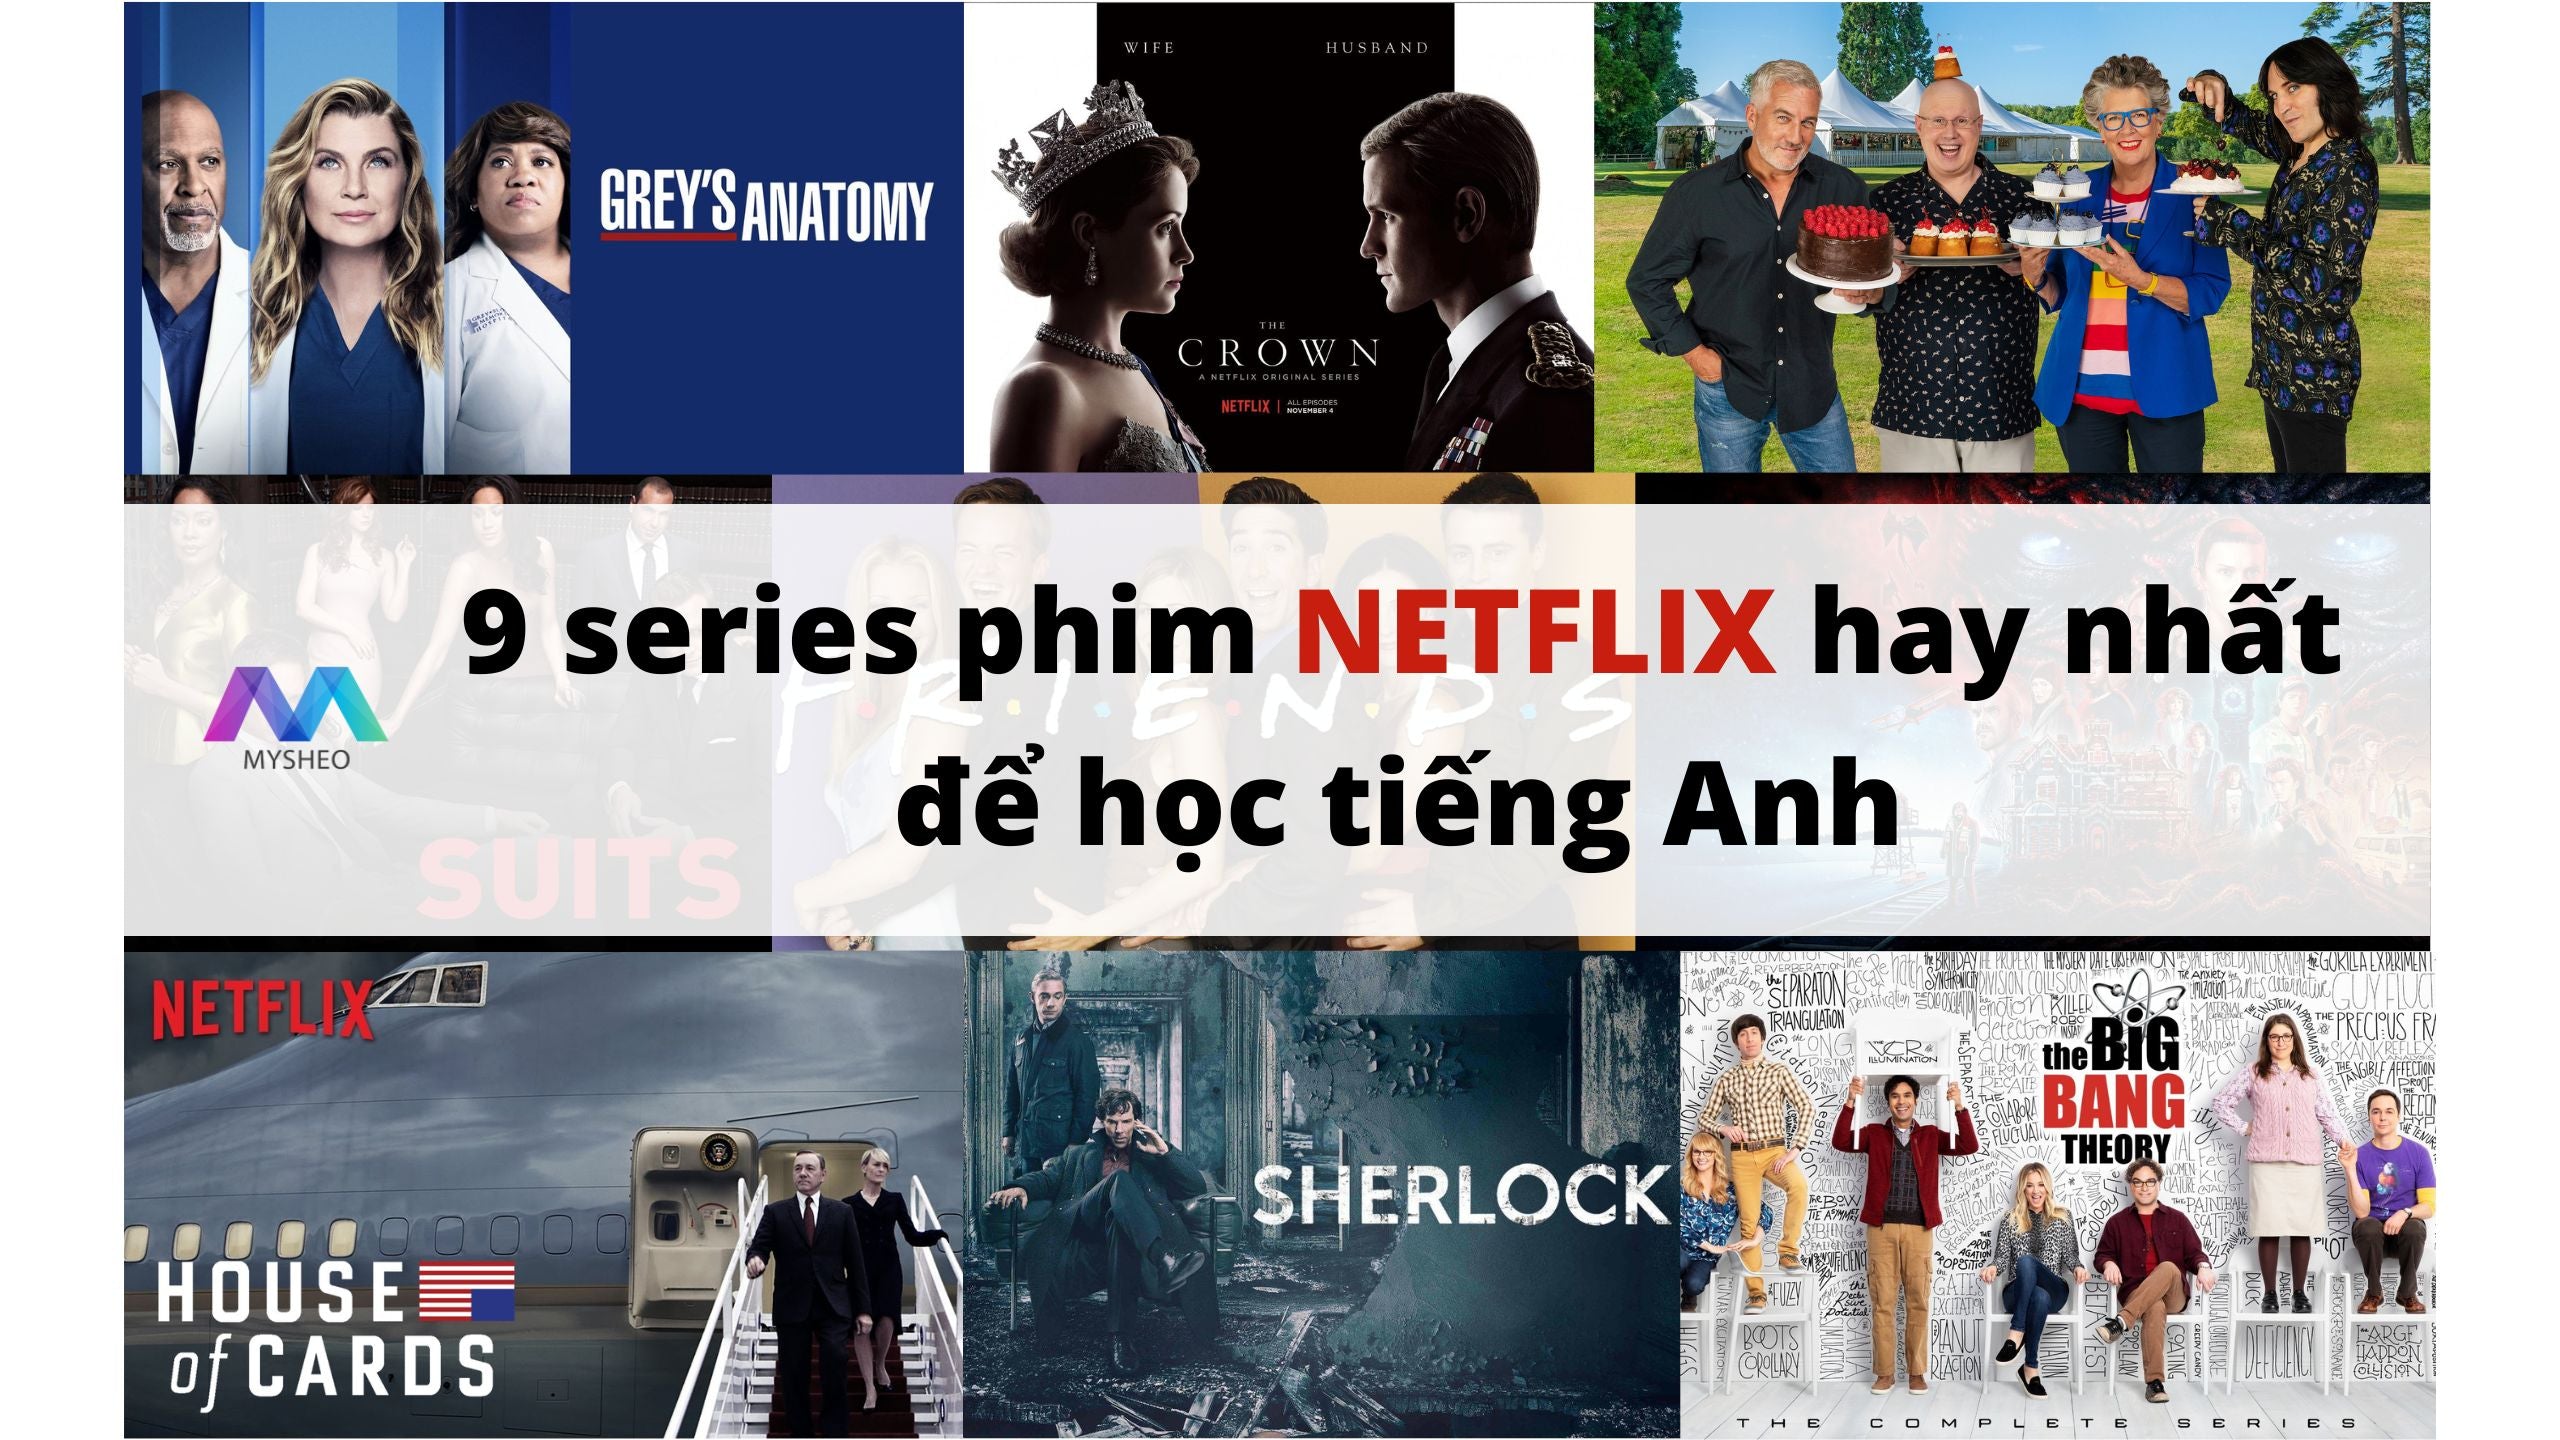 9 series phim hay nhất để học tiếng Anh trên Netflix